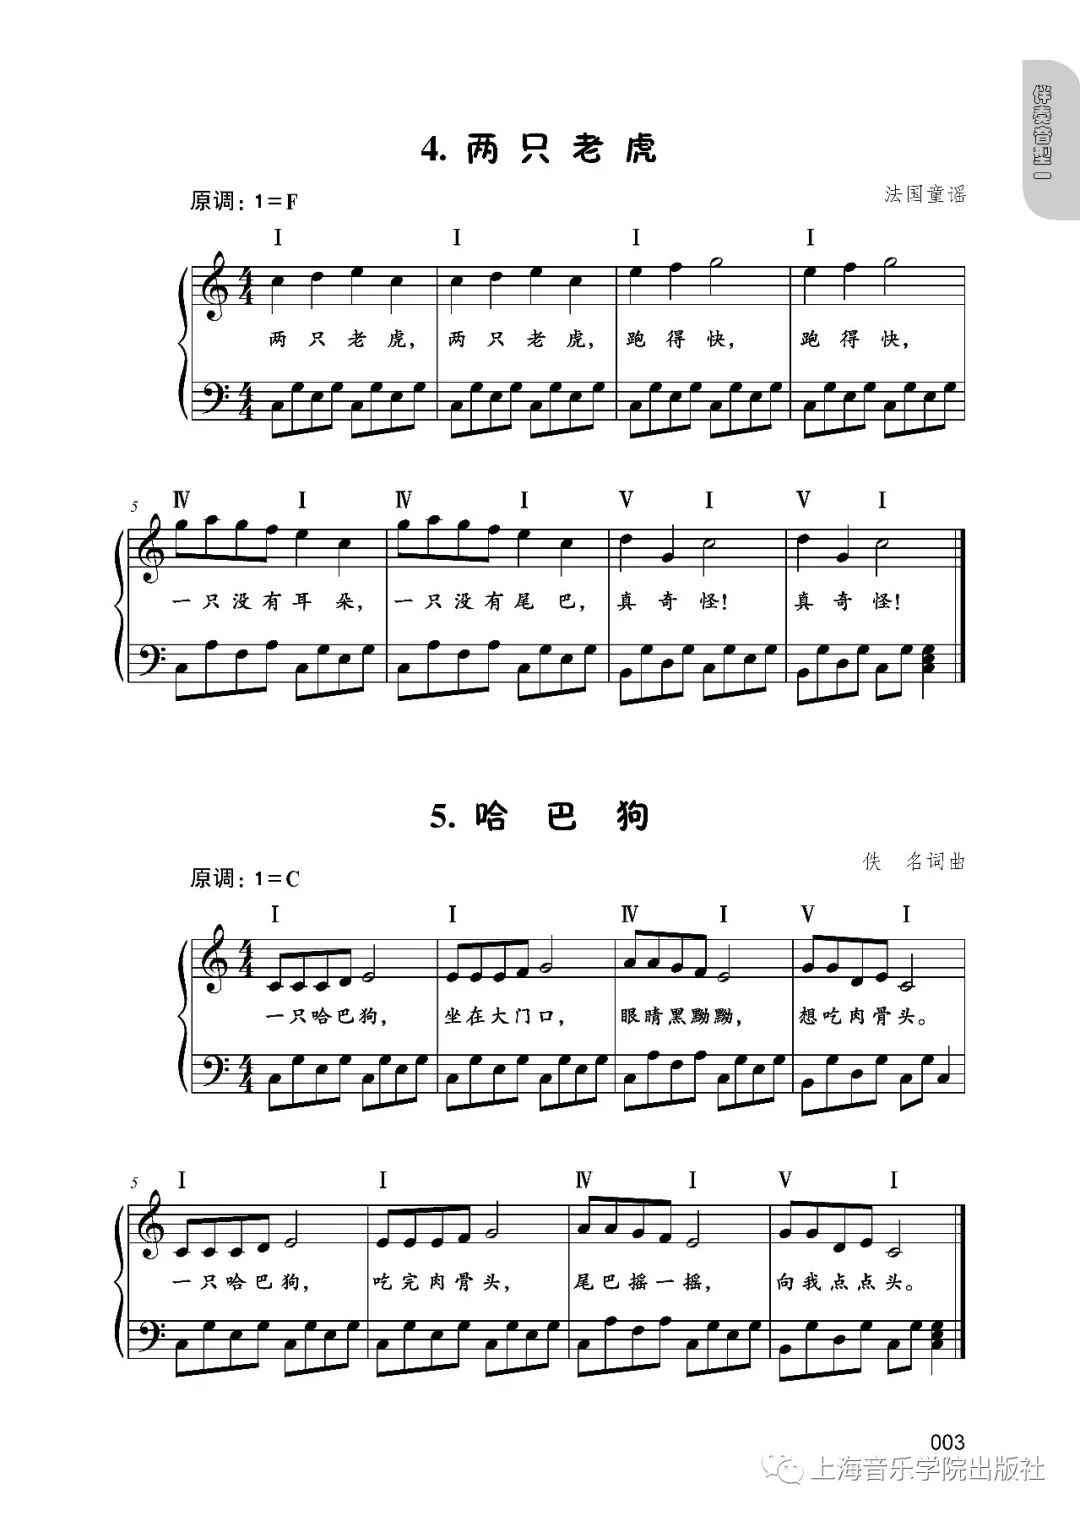 【新书推介】陈欣编配《儿童歌曲钢琴伴奏曲集(五线谱版)